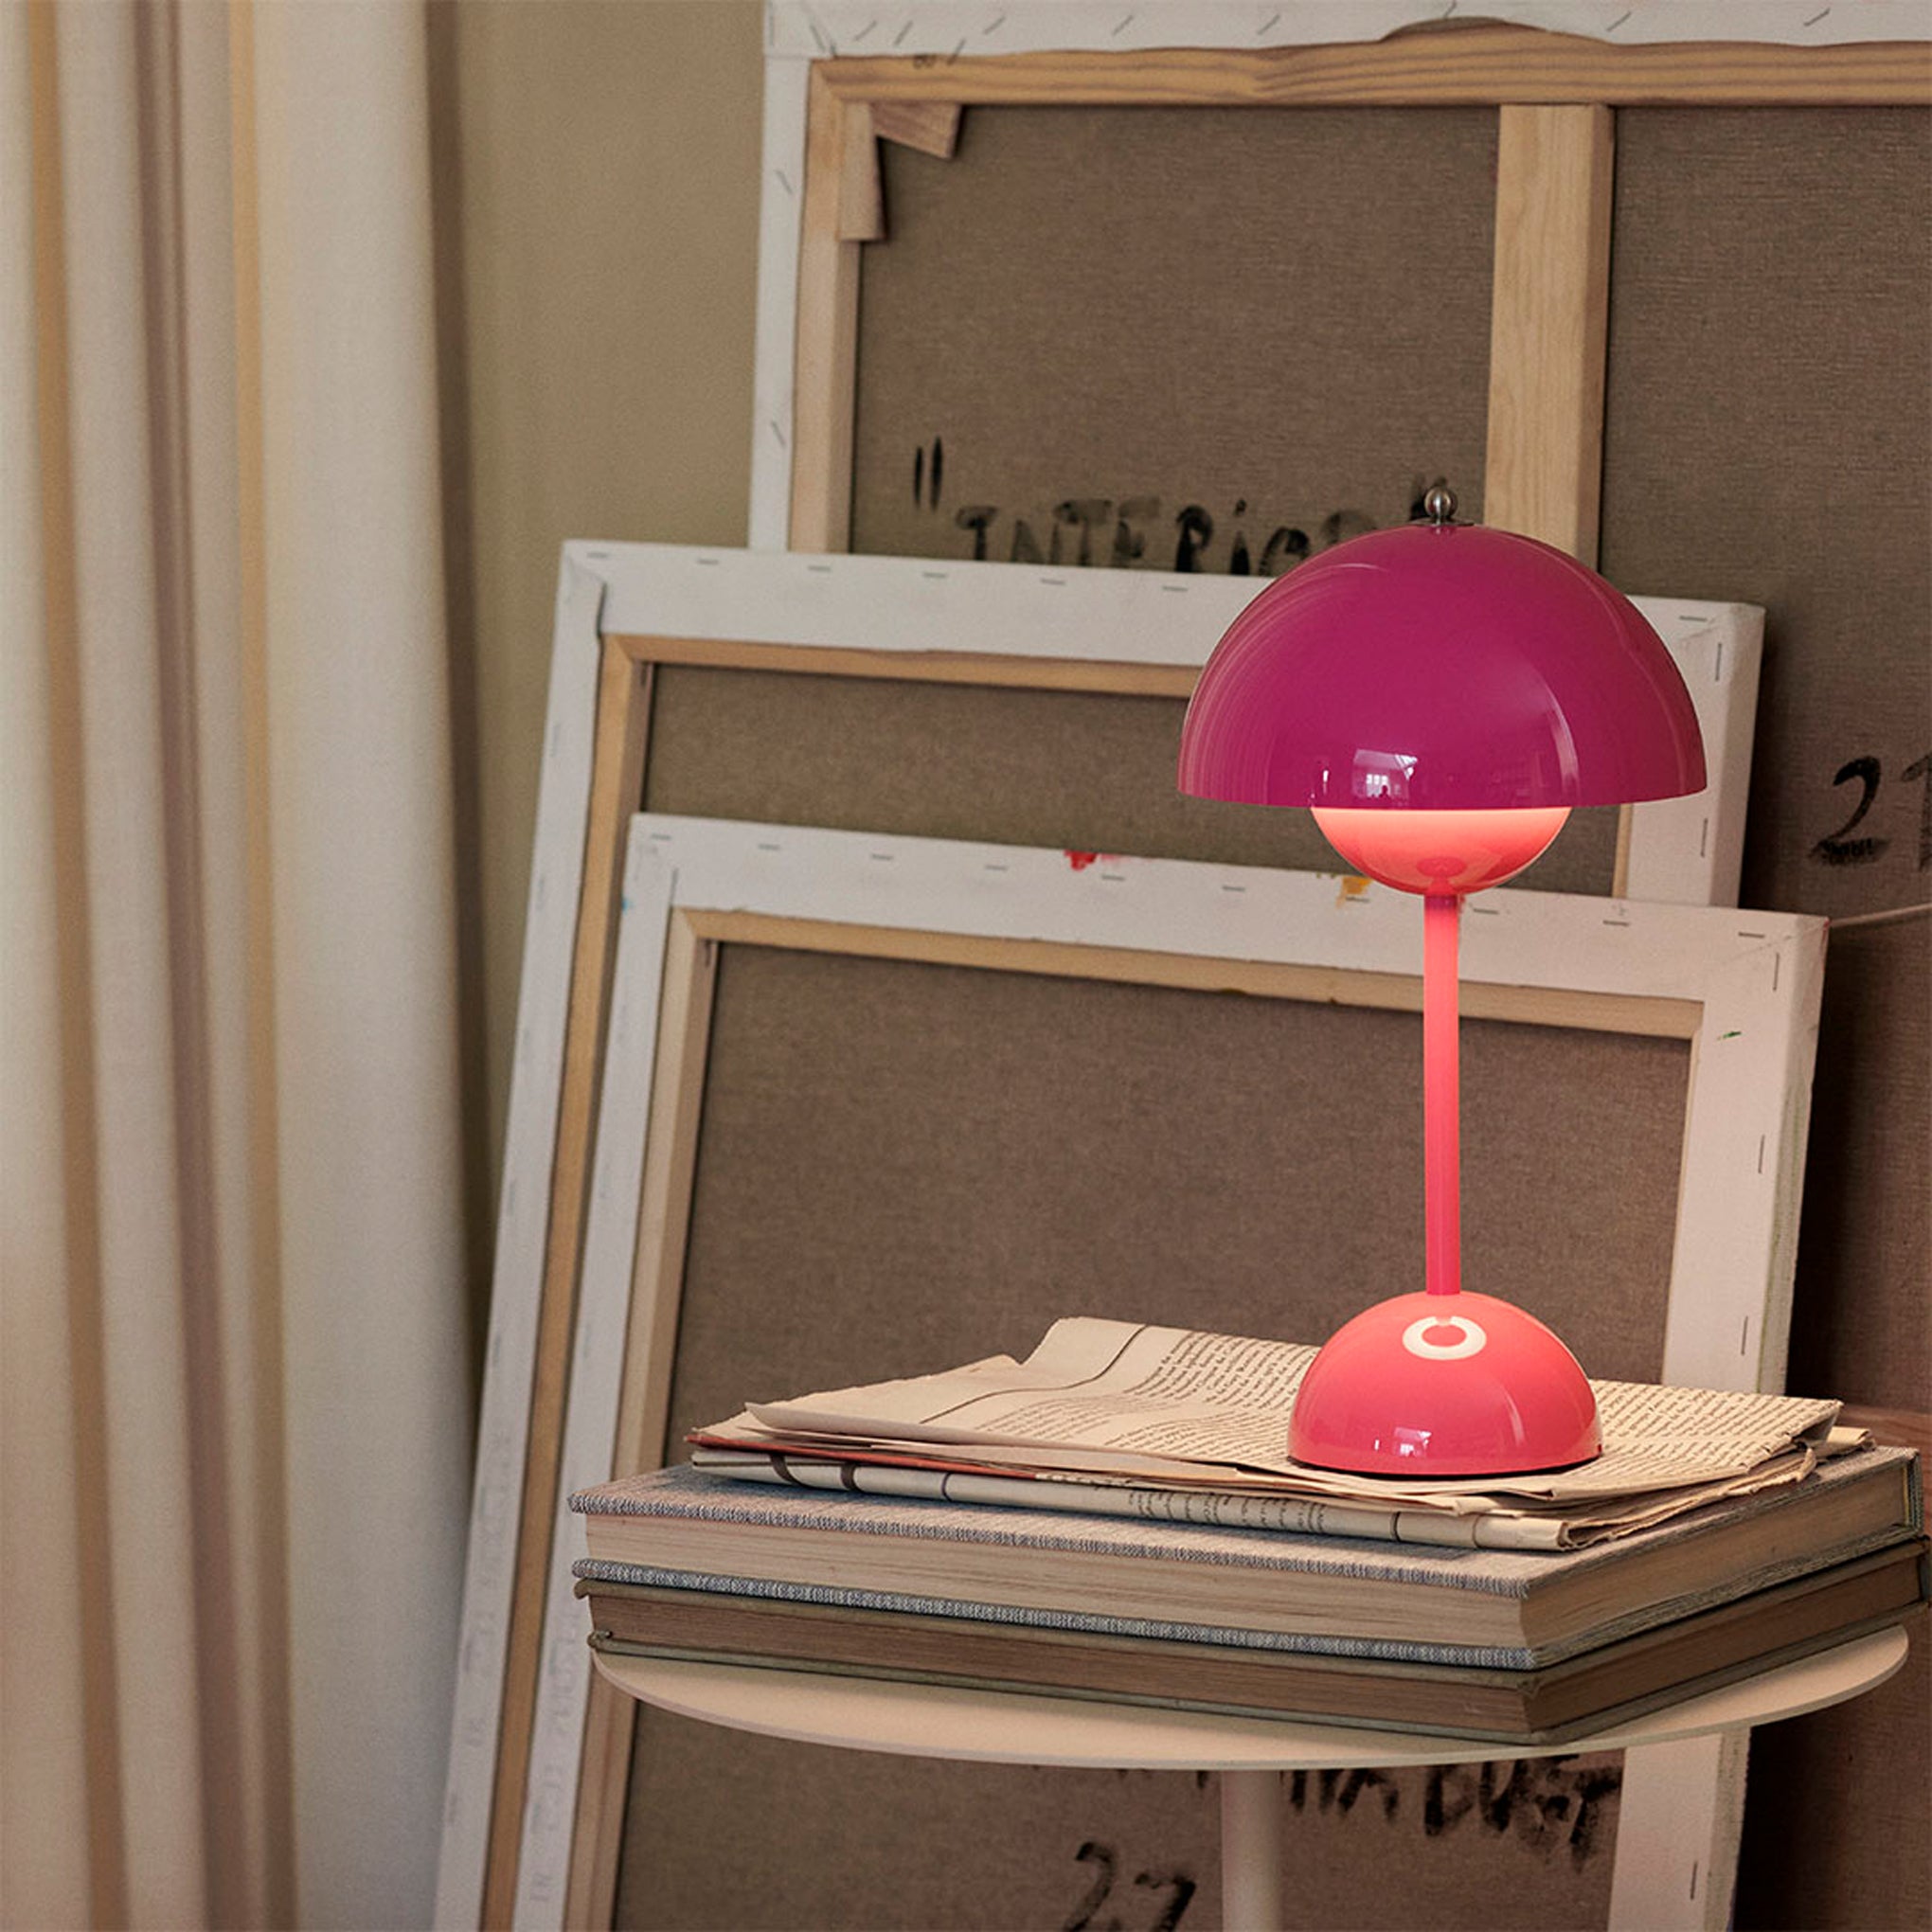 Flowerpot Portable Table Lamp - Philadelphia Museum Of Art